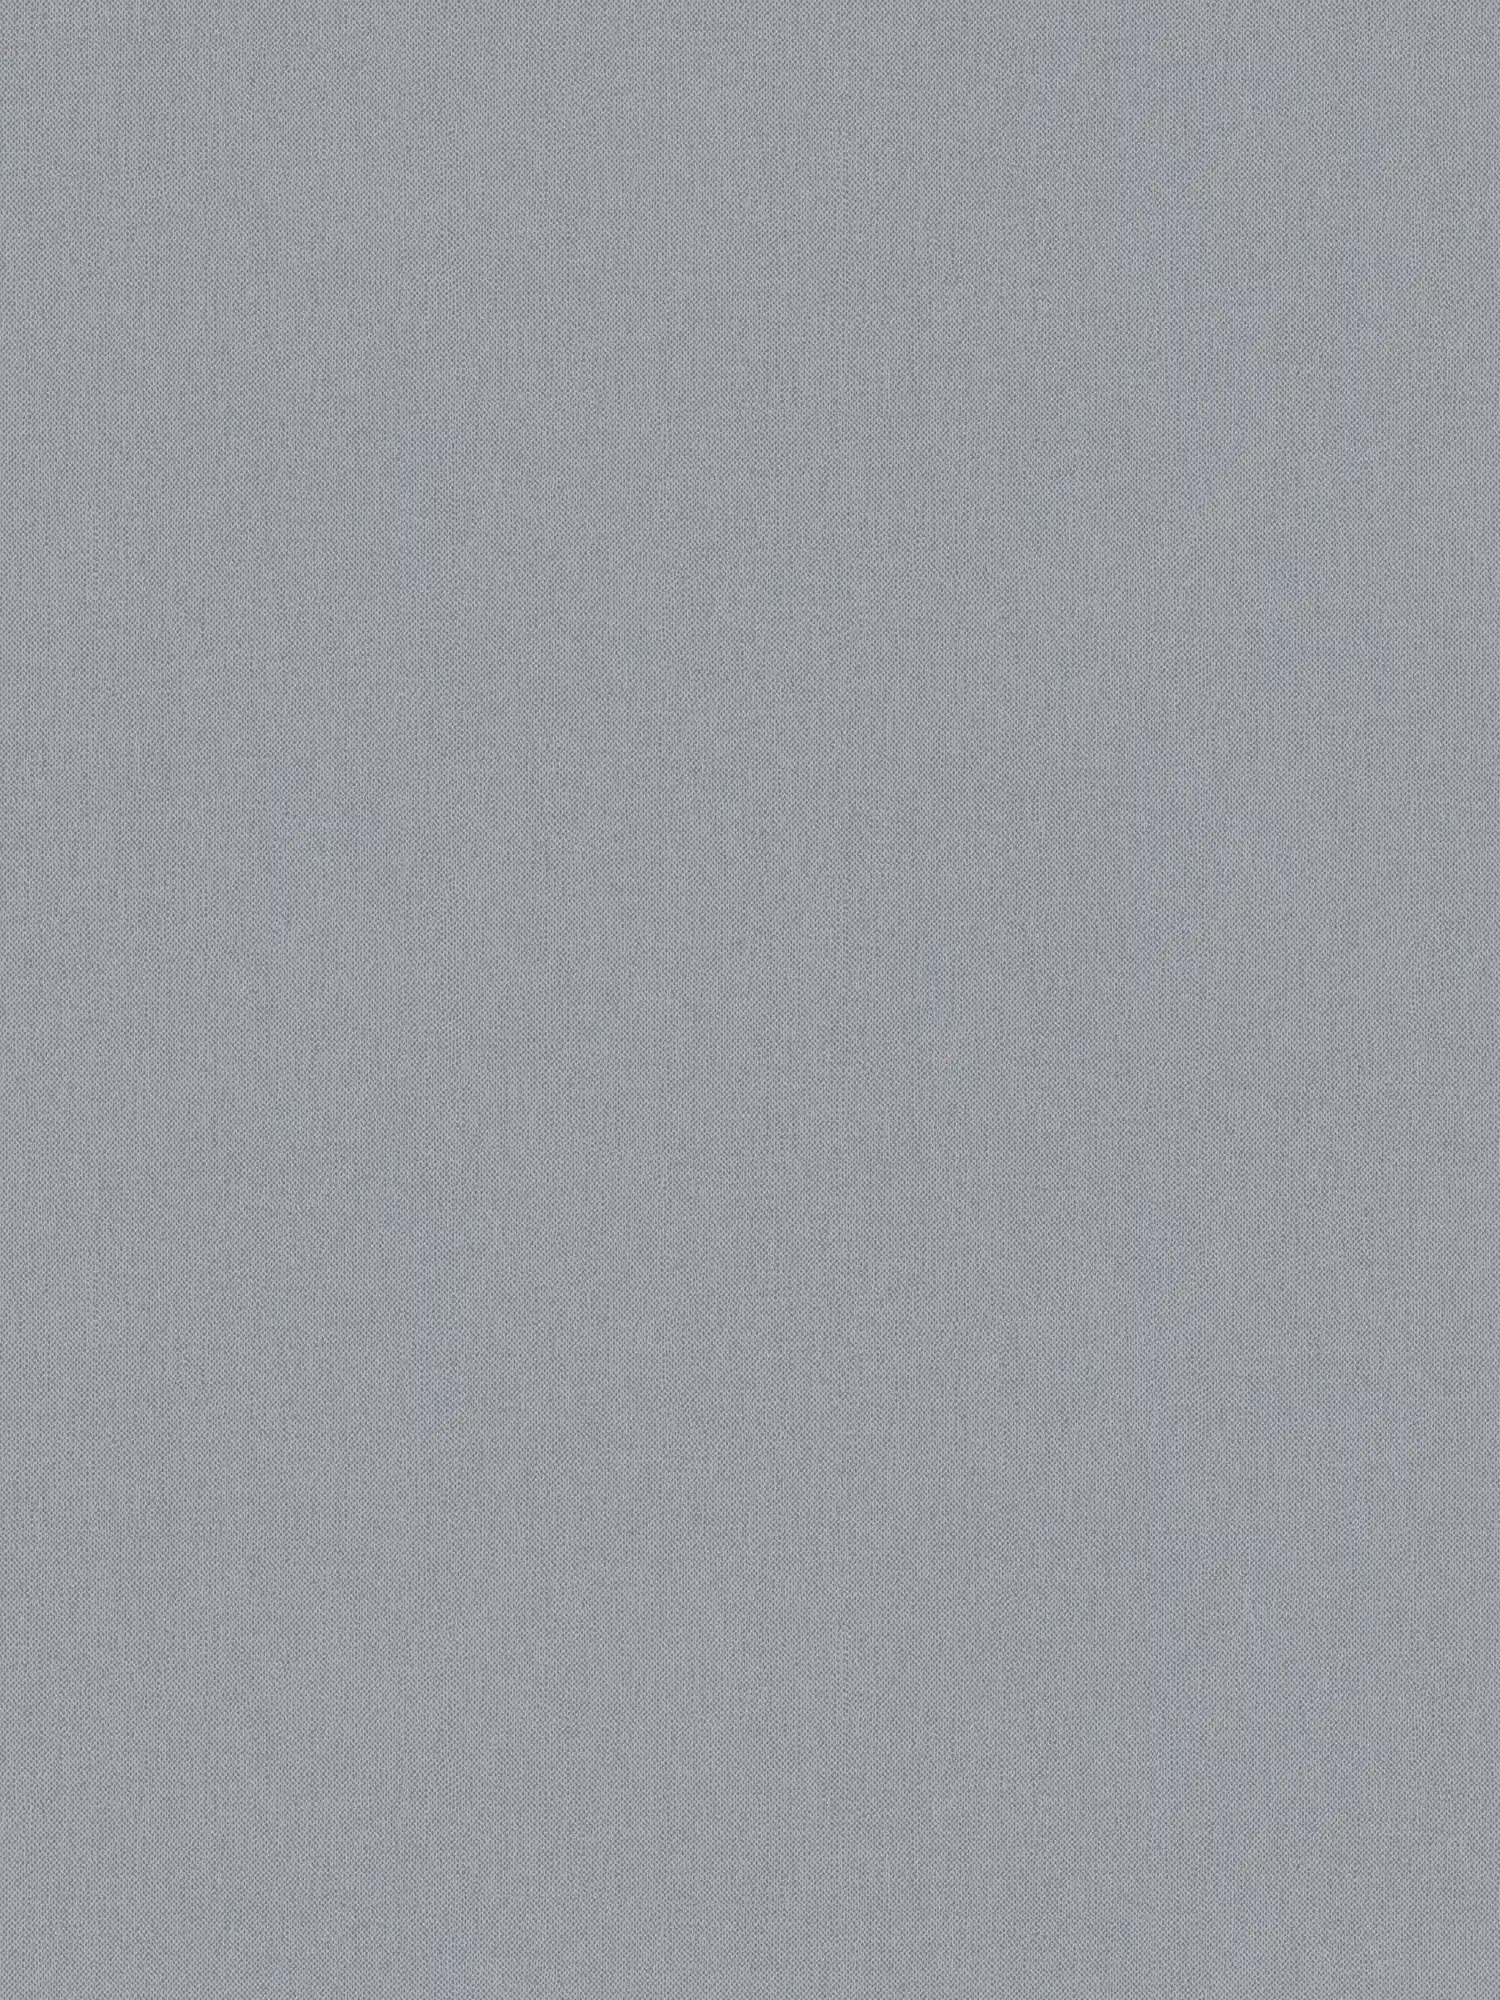 Carta da parati in lino grigio con struttura in tessuto e superficie opaca
